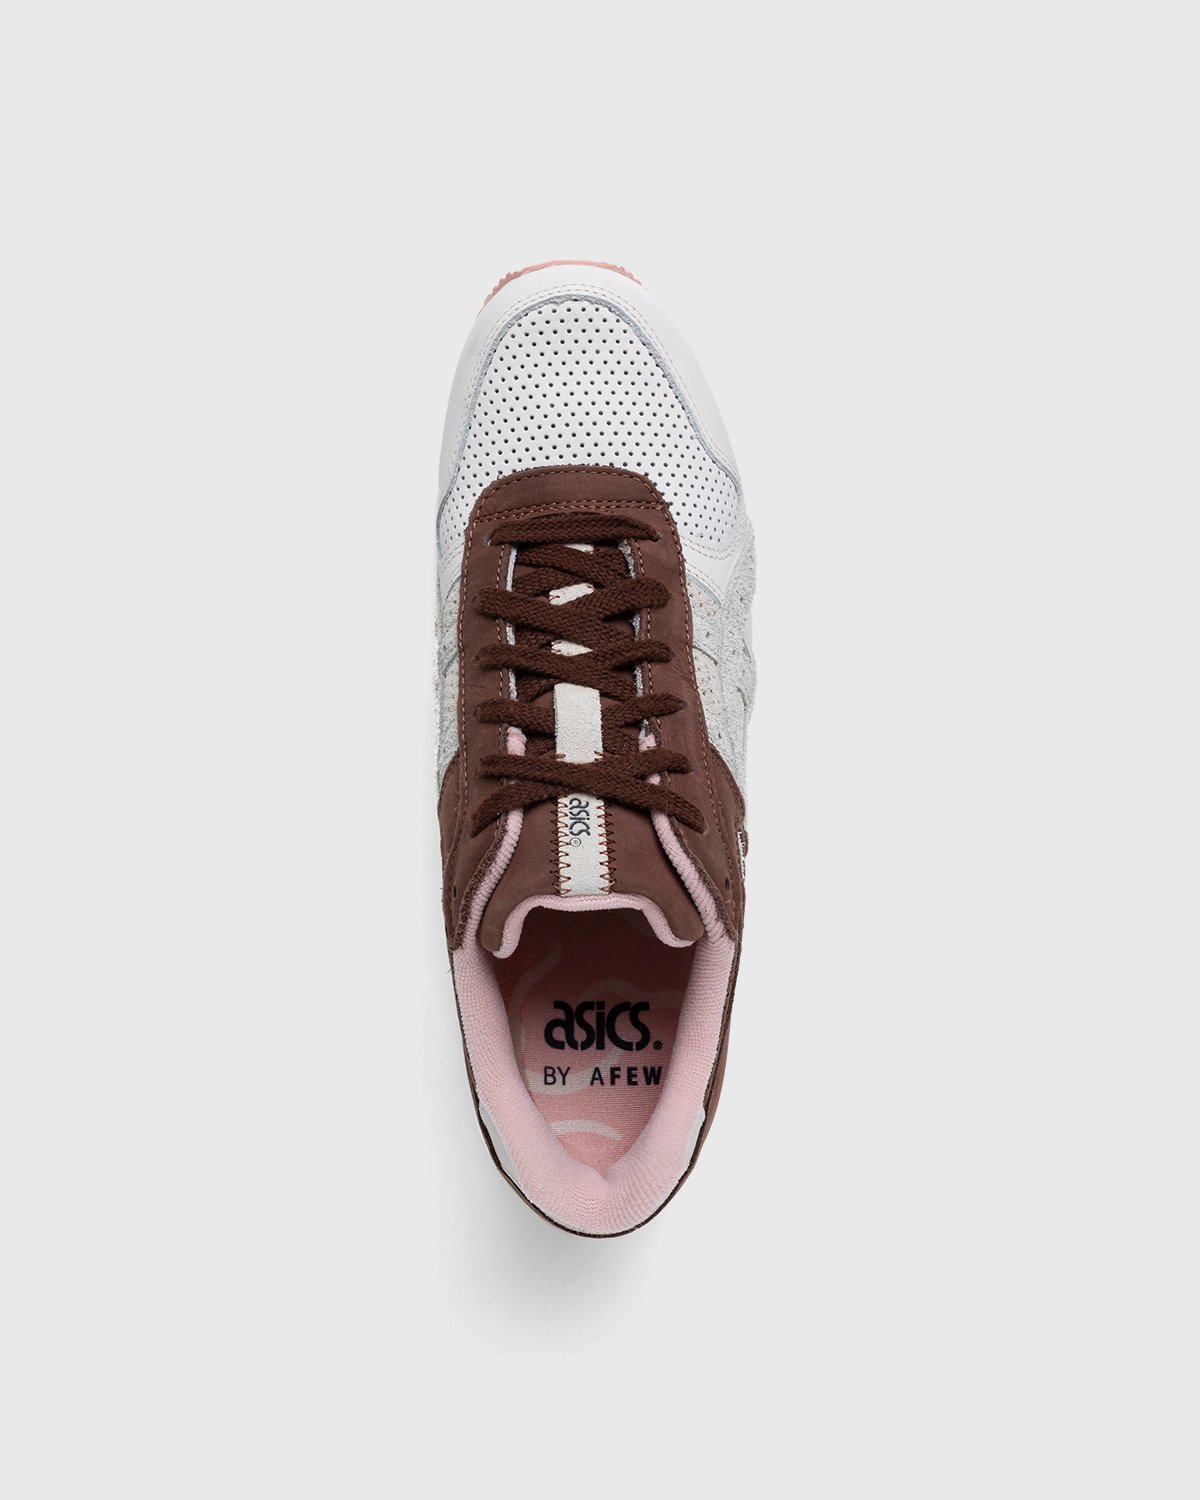 asics x Afew - GT-II Blush/Chocolate Brown - Footwear - Pink - Image 5